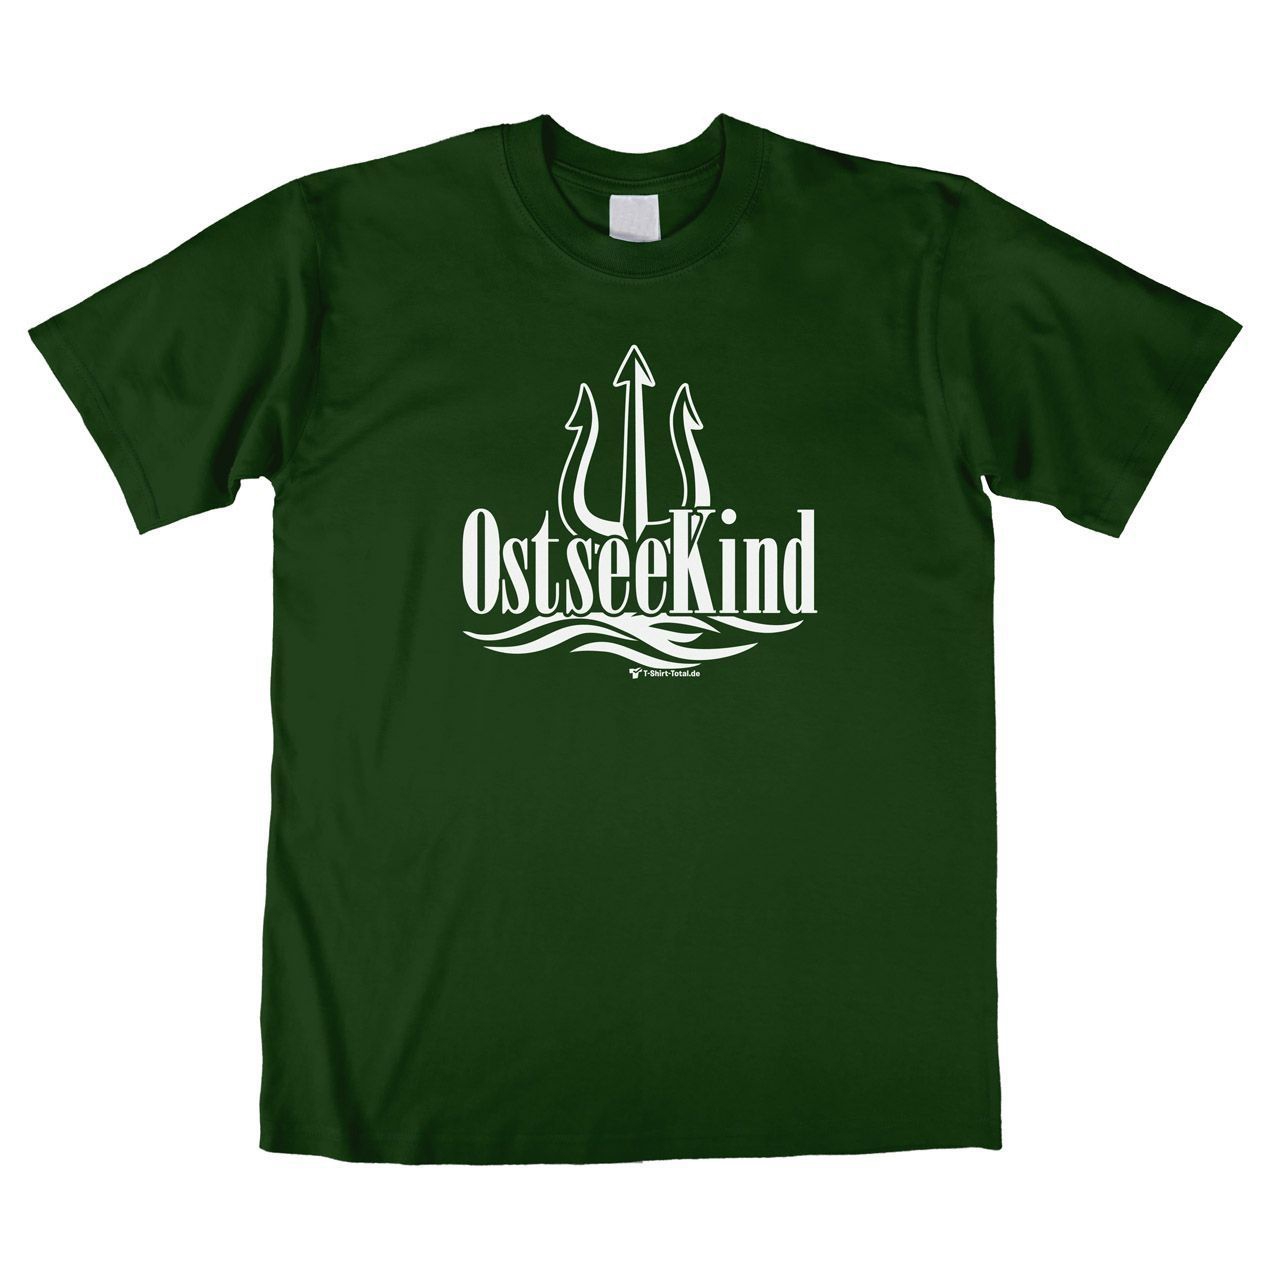 Ostsee Kind (für Erwachsene) Unisex T-Shirt dunkelgrün Large